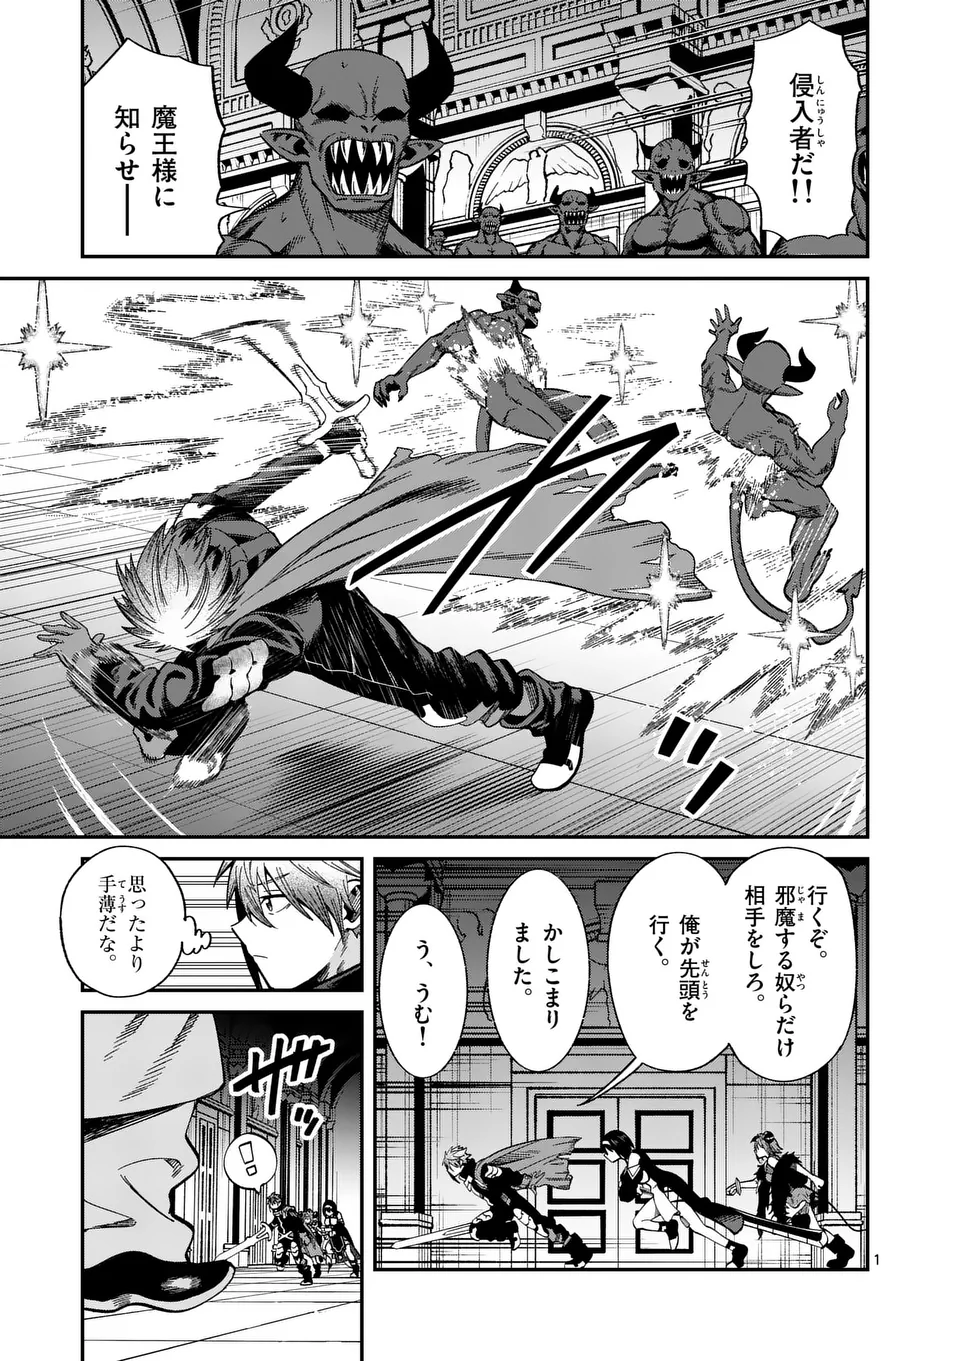 Power-Hara Genkai Yuusha, Maougun kara Koutaiguu de Scout sareru - Chapter 7 - Page 1